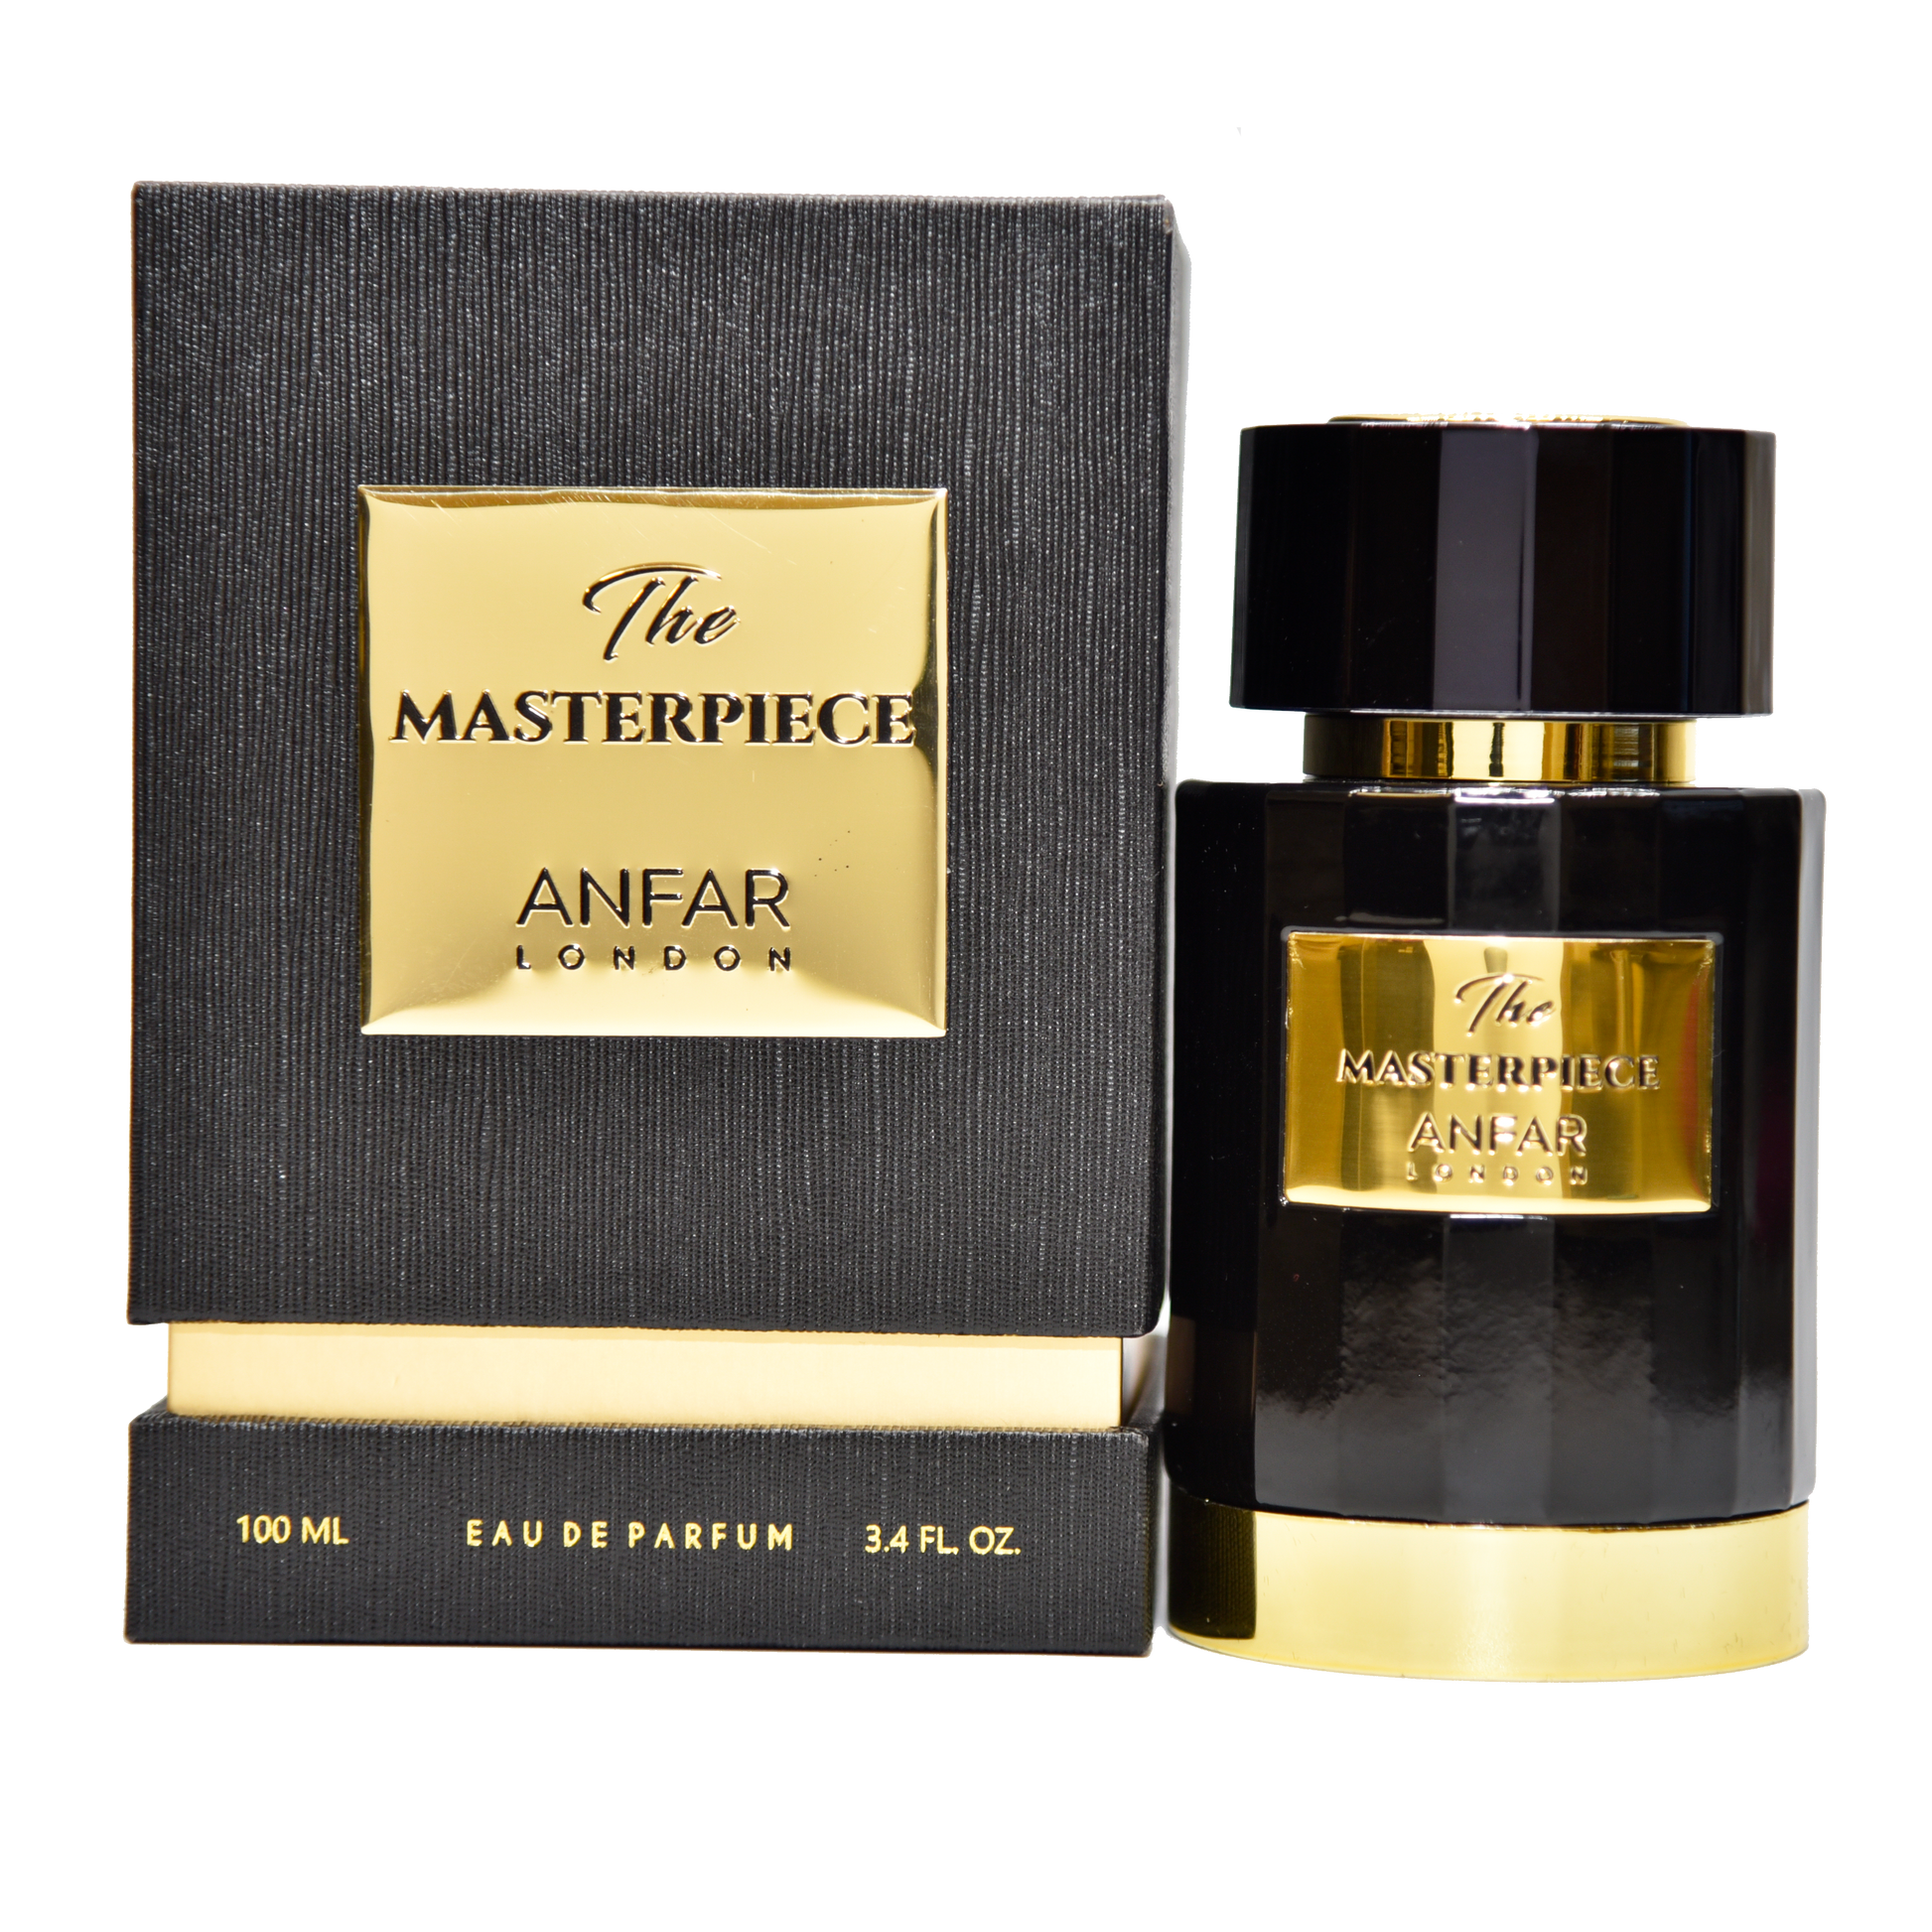  - Anfar - 3.4 oz - Eau de Parfum - Fragrance - 6292257588415 - Fragrance